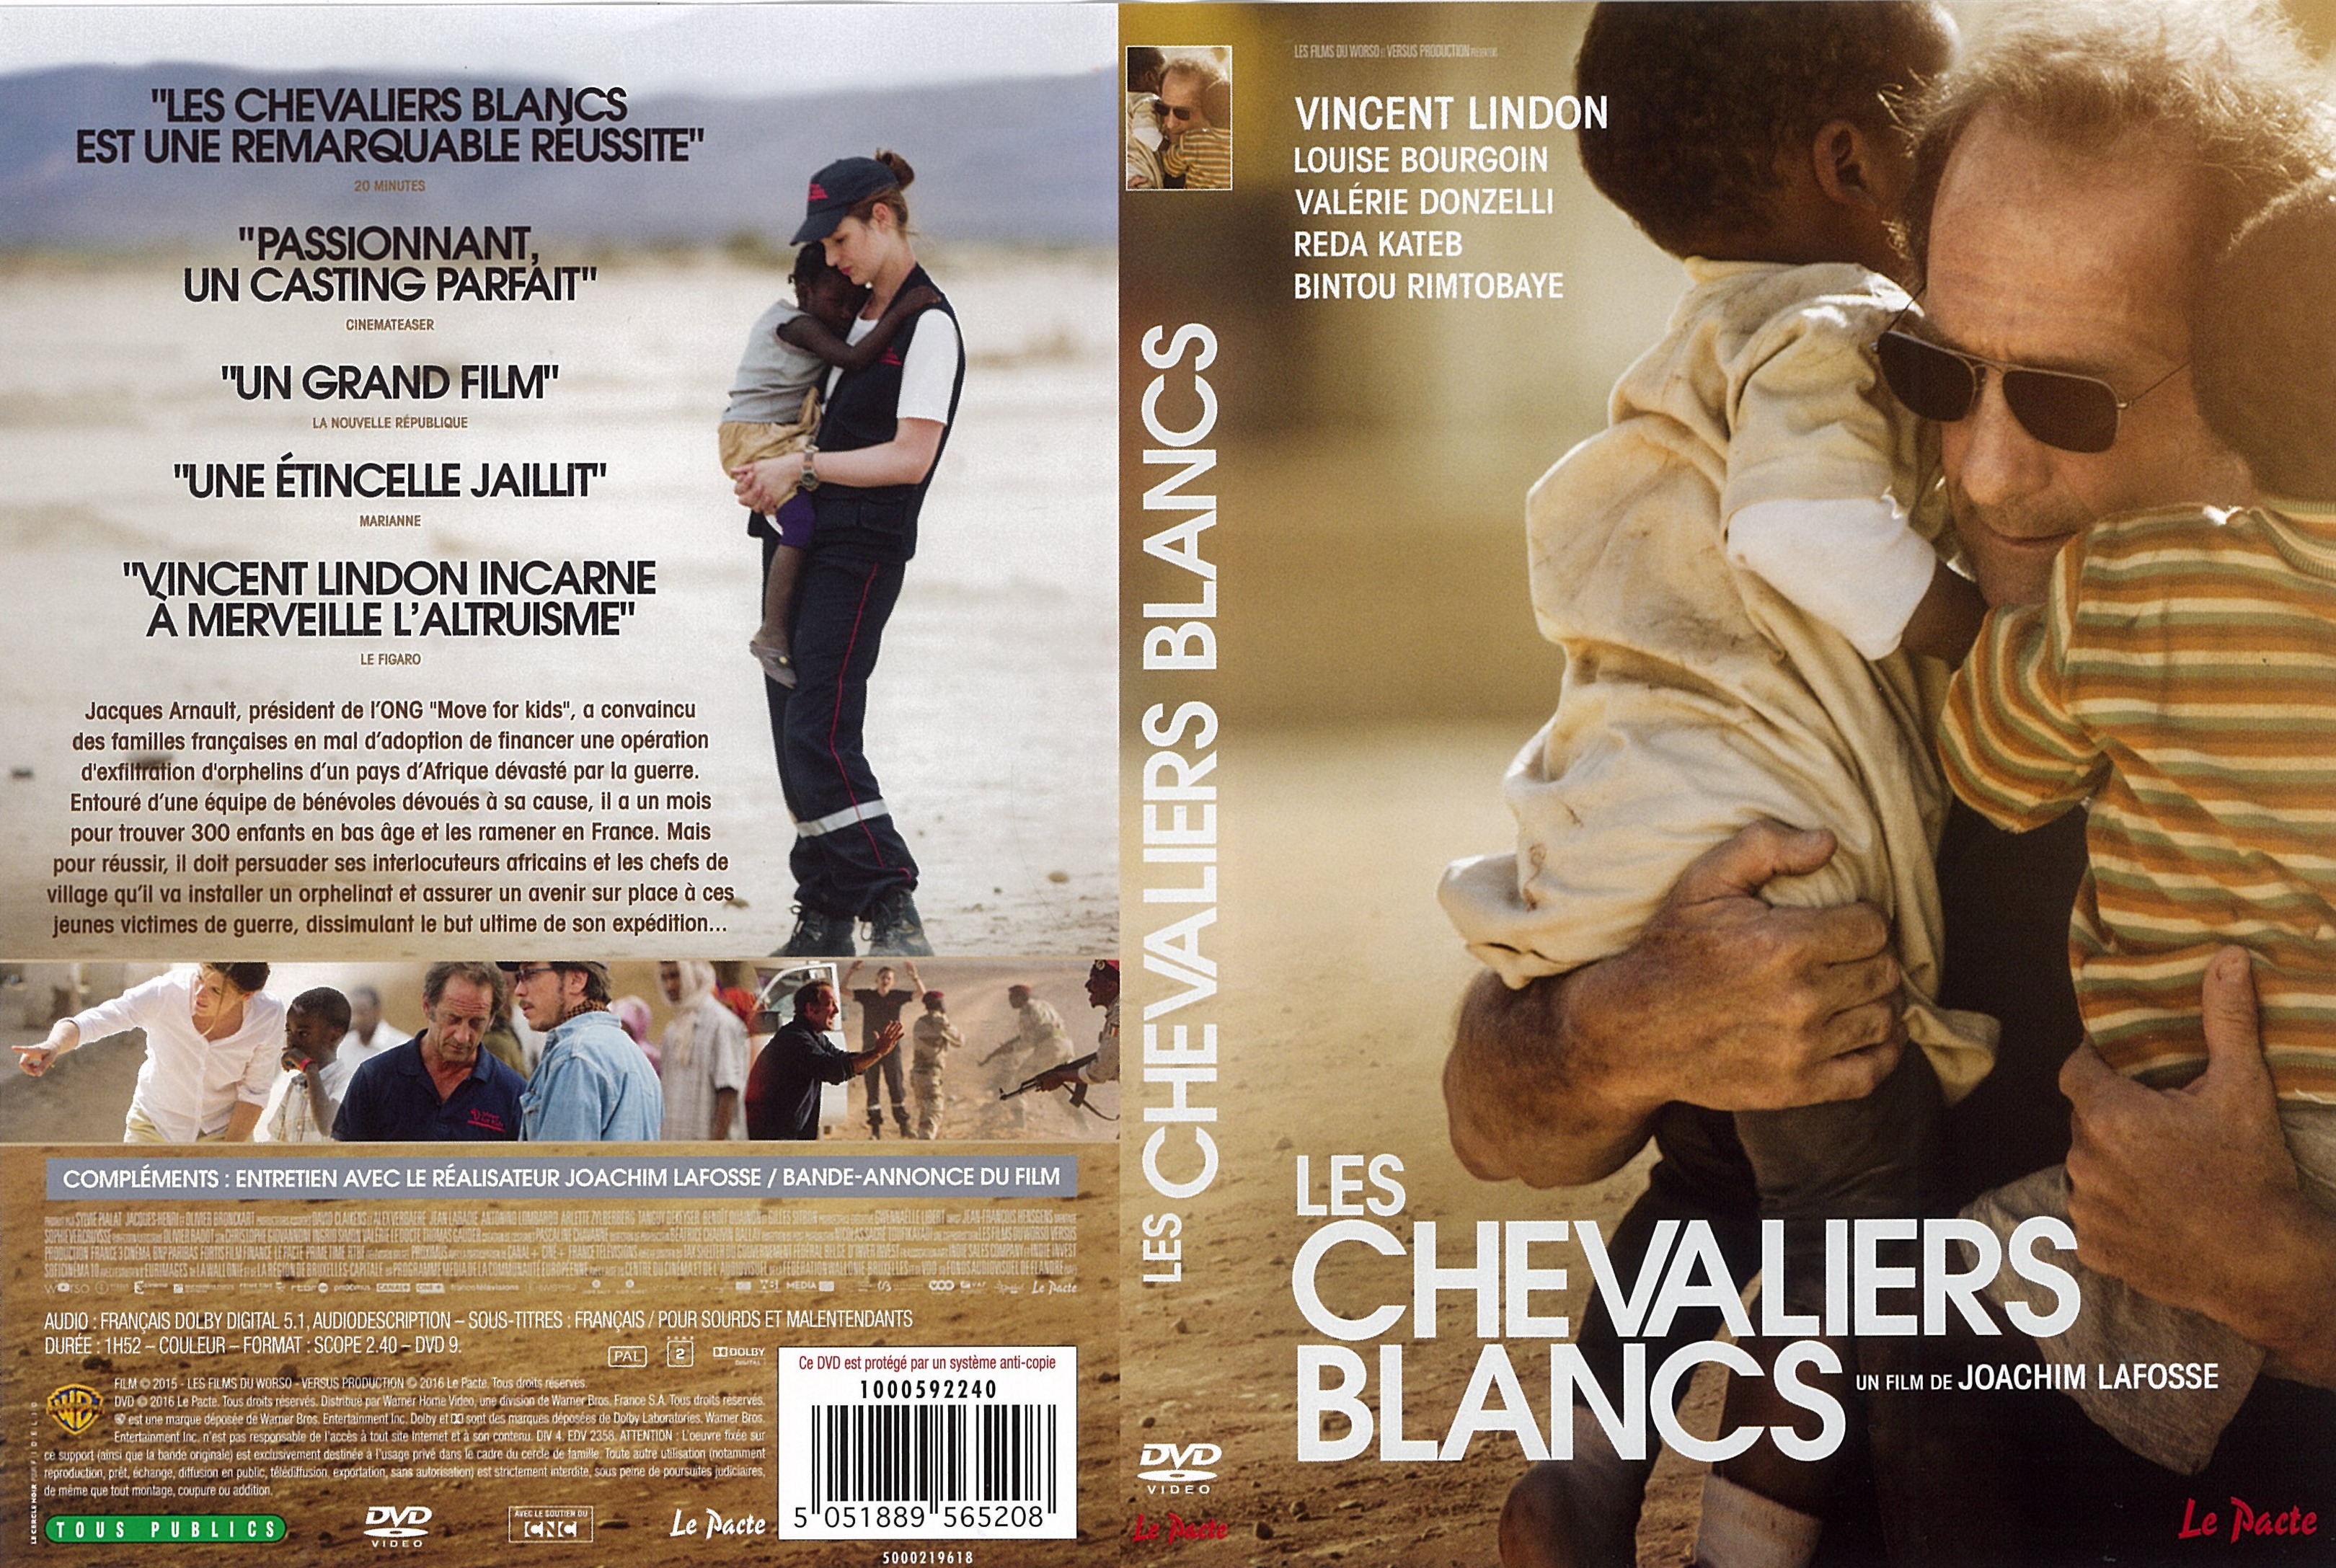 Jaquette DVD Les Chevaliers blancs